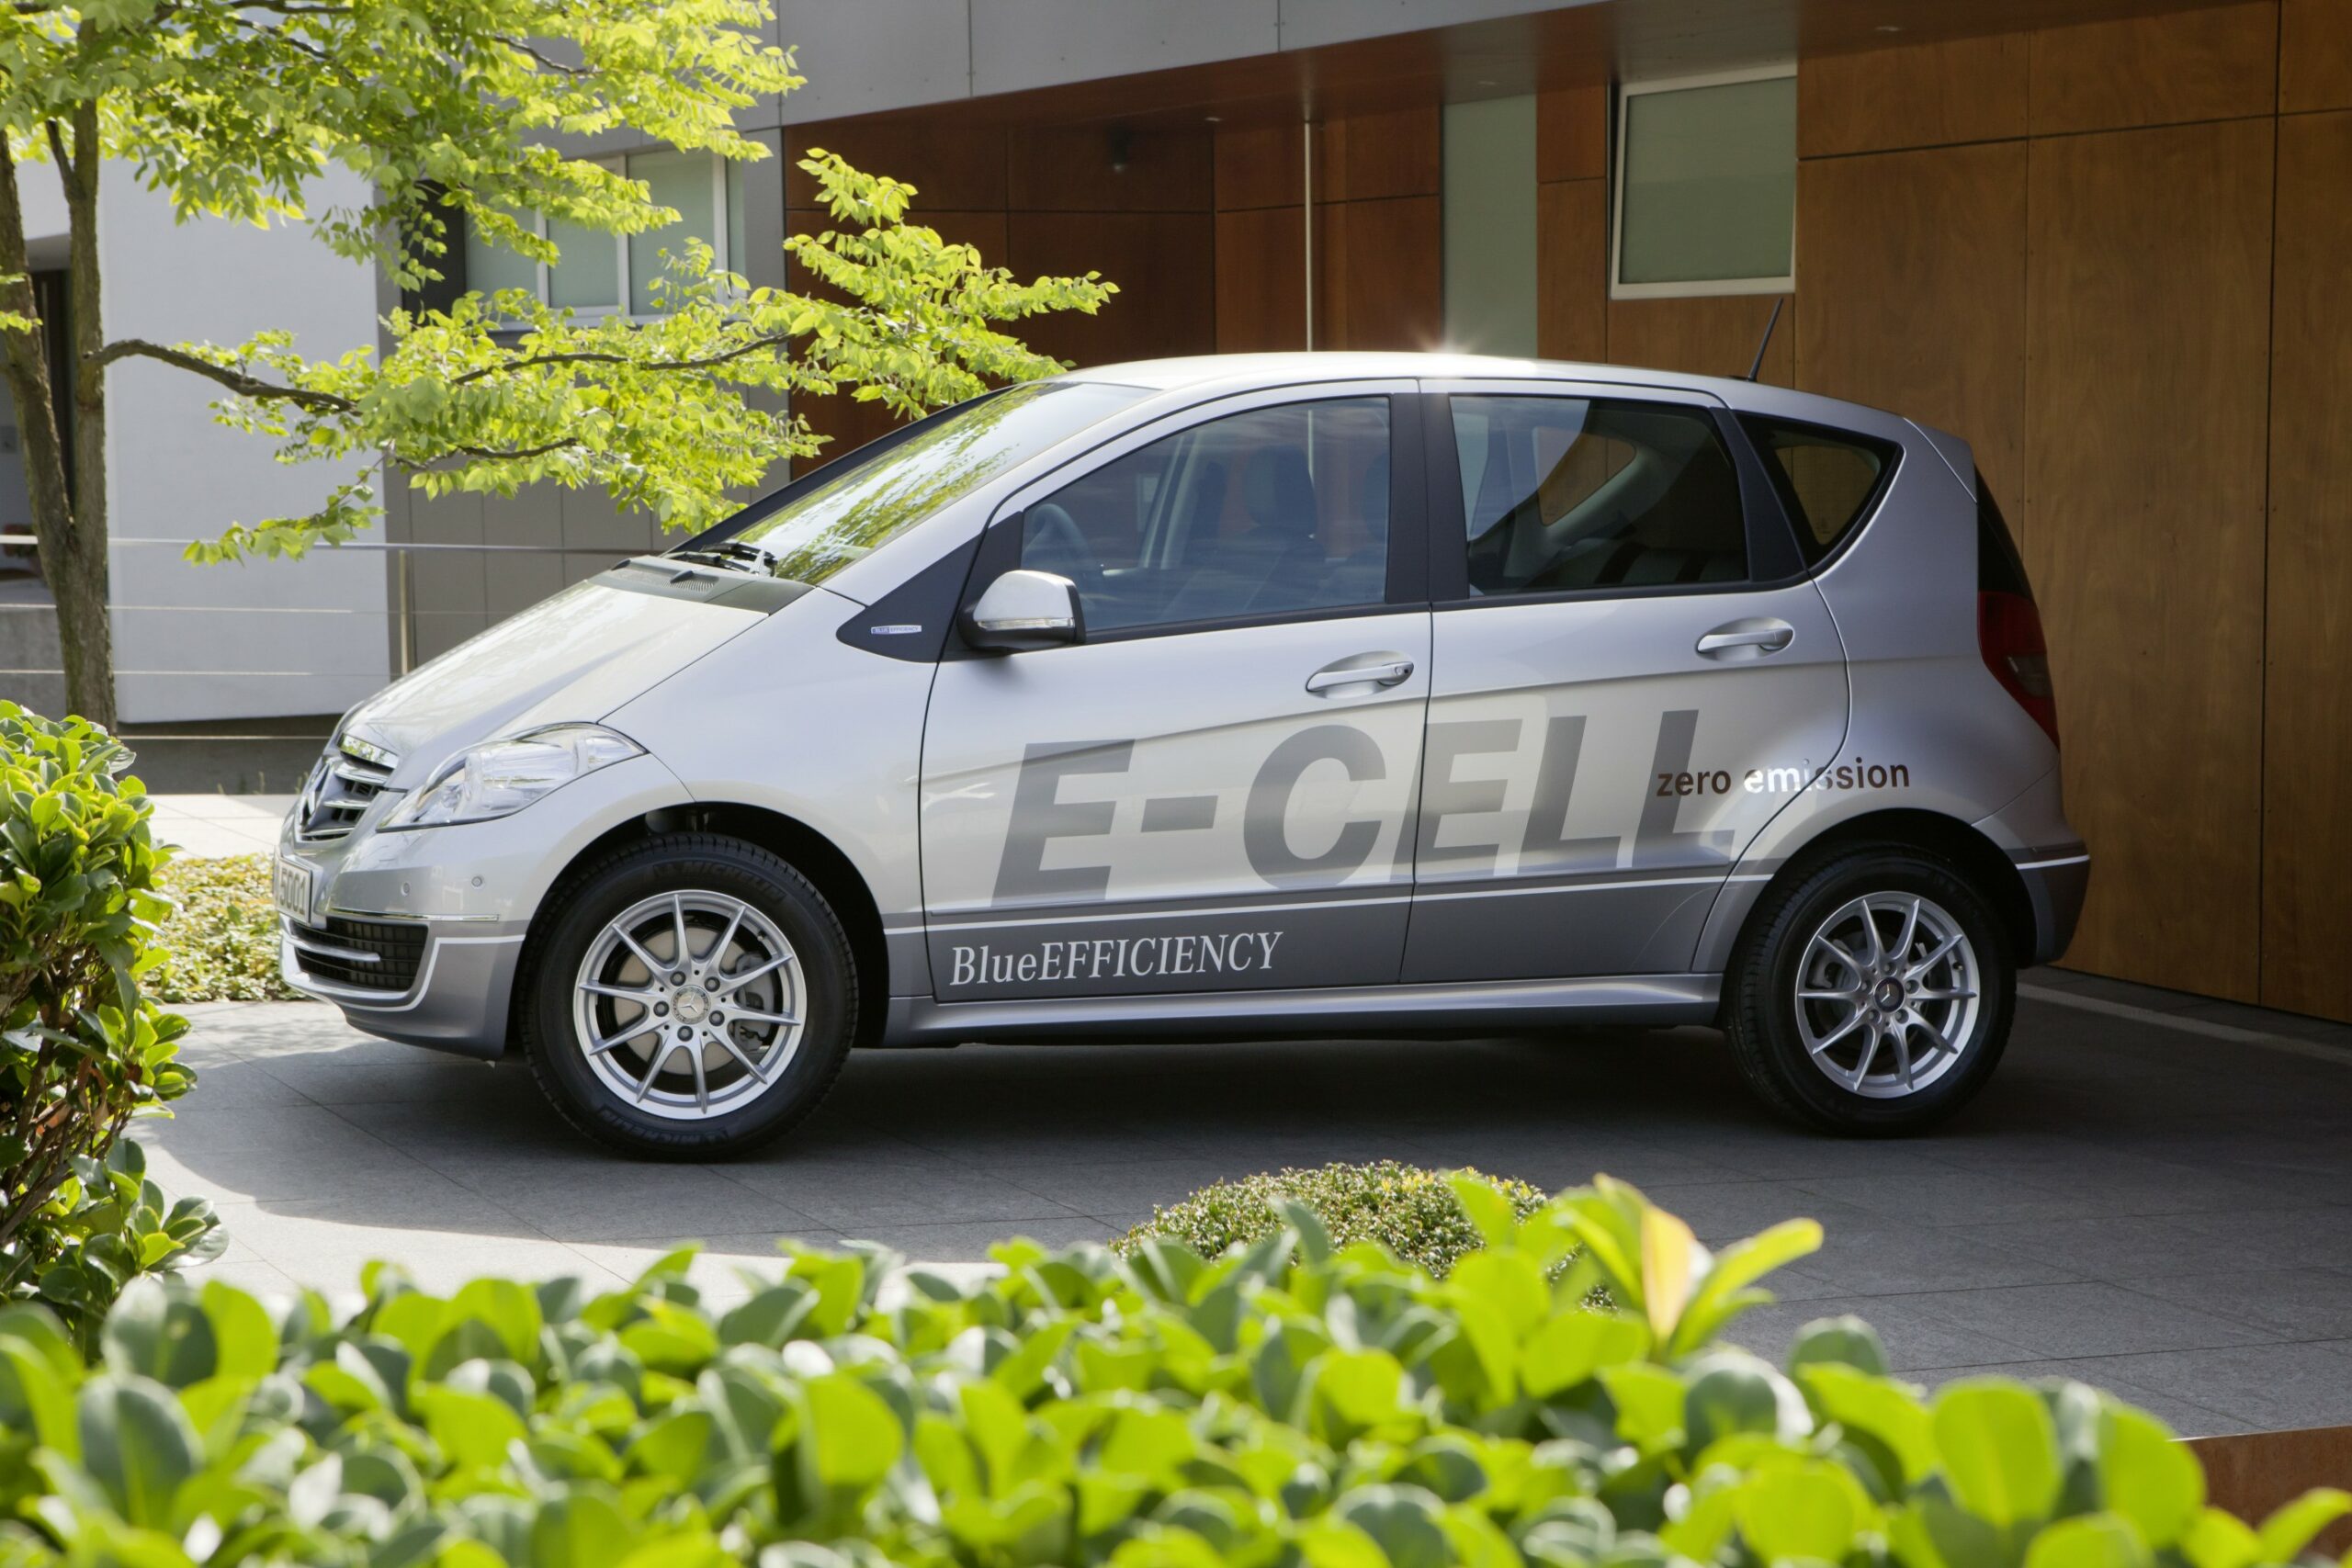 Mercedes-Benz A-Klasse E-CELL wurde vor über 10 Jahren vorgestellt